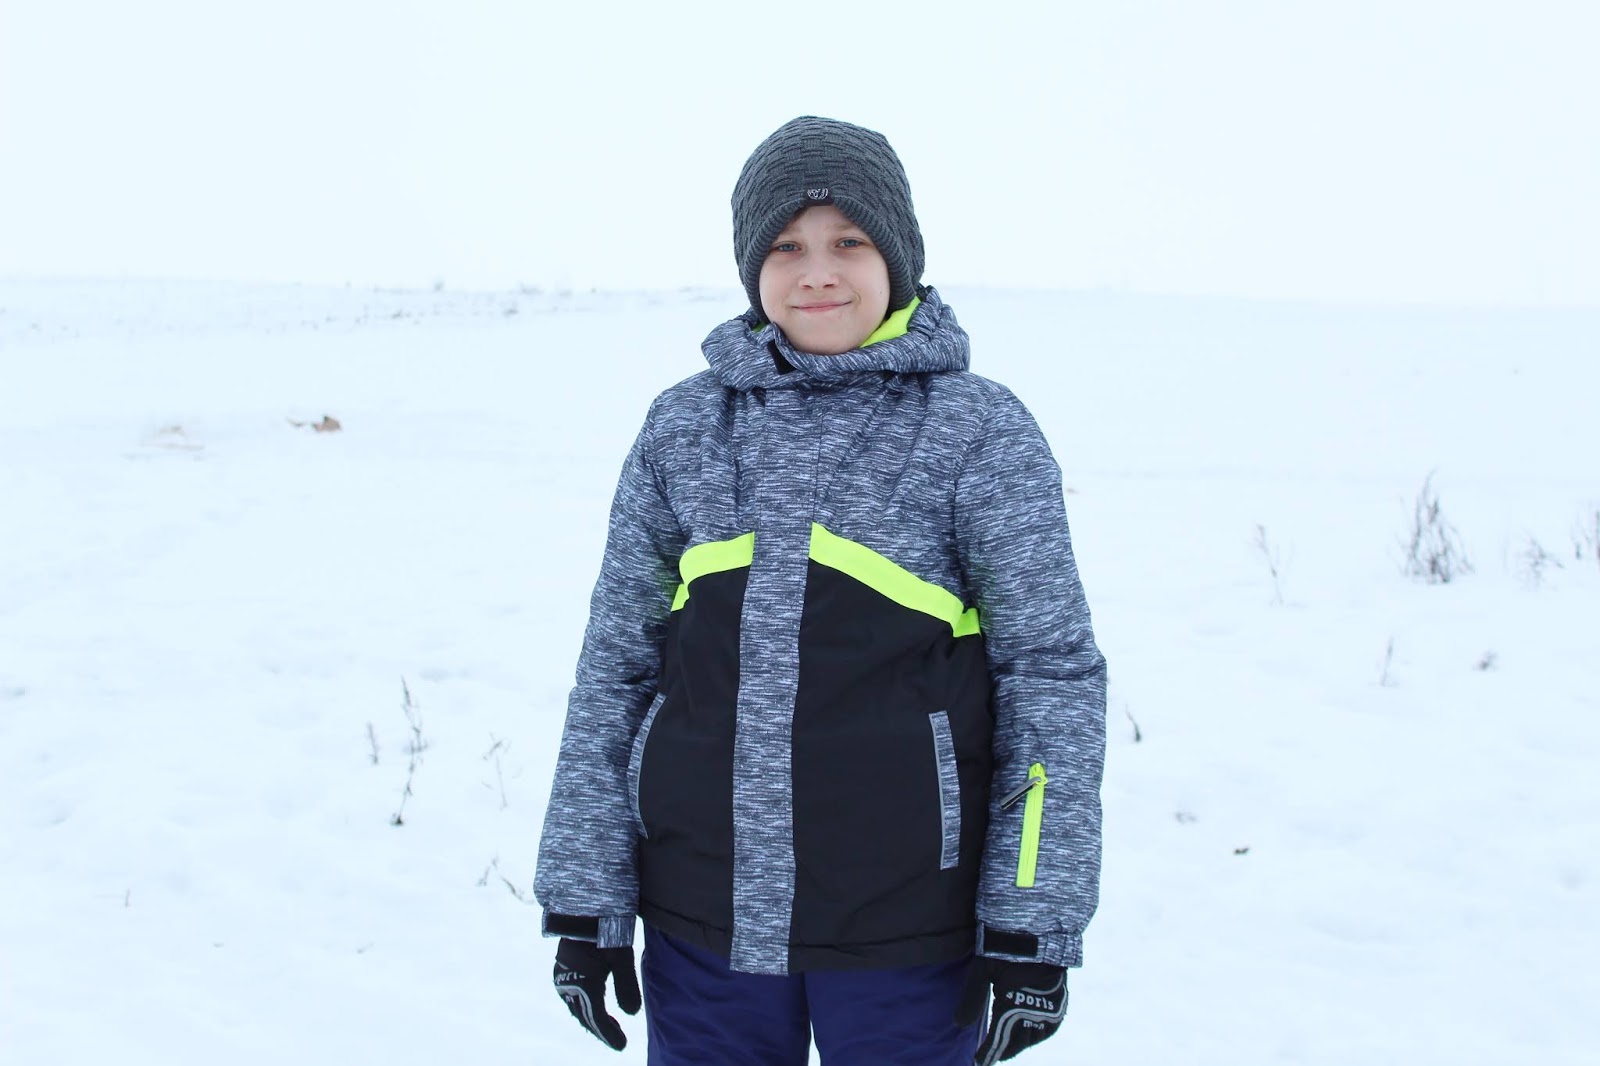 kurtka outdoorowa z kieszonką na rękawie dla aktywnego chłopca i spodnie outdoorowe z odblaskowymi lampasami dla aktywnego chłopca Lemon Explore